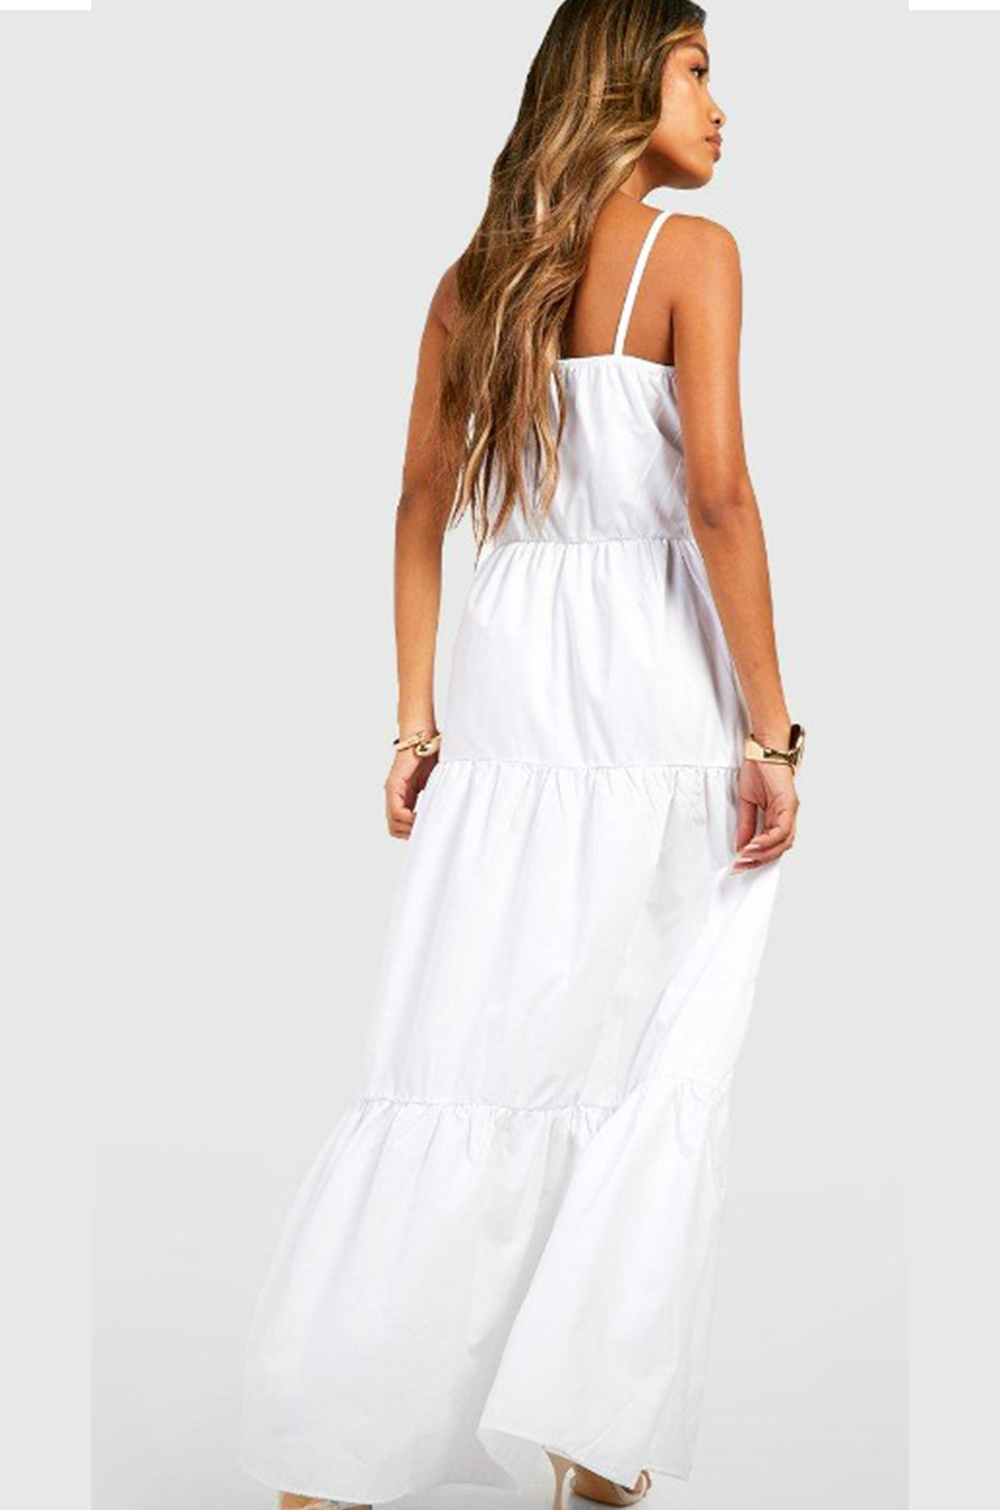 Frisky White Dress